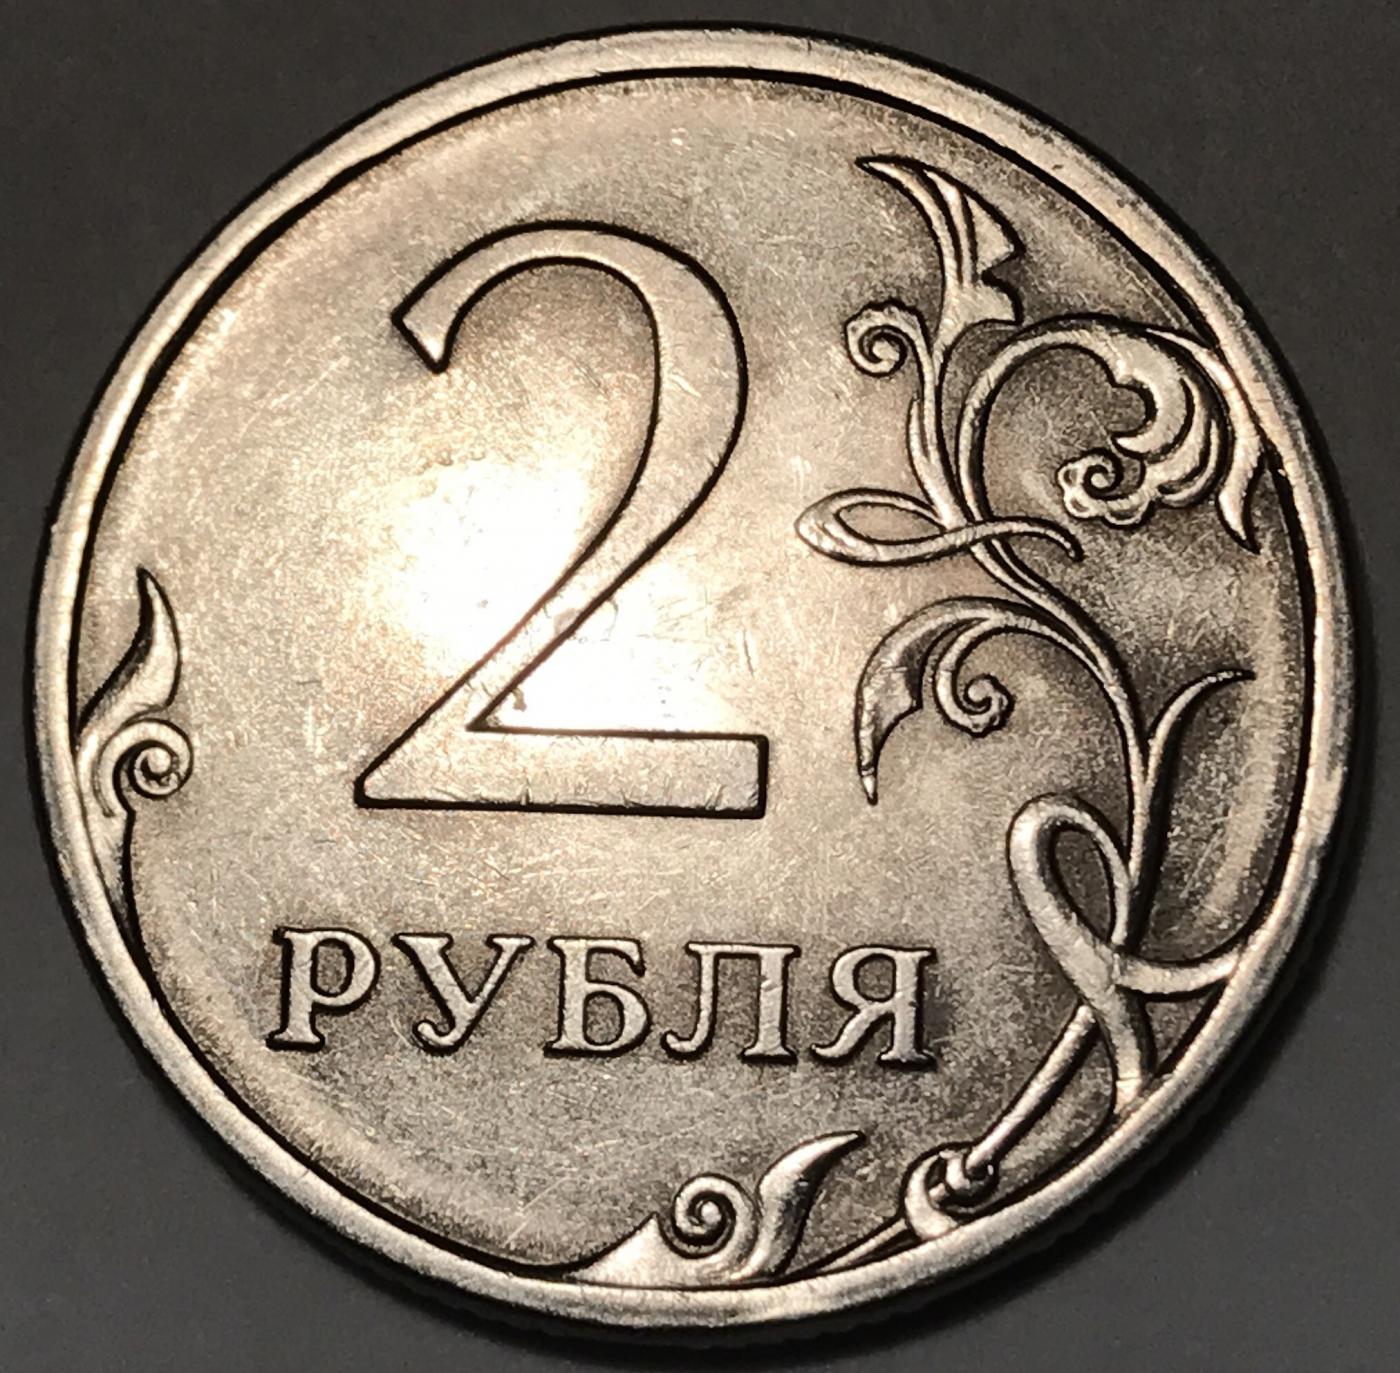 2 рубль россии. 2 Рубля СПМД. Монеты 2 рубля 2000 года, буквы СПМД. Монета 2 рубля 2021 года. Бракованные 2 рубля.